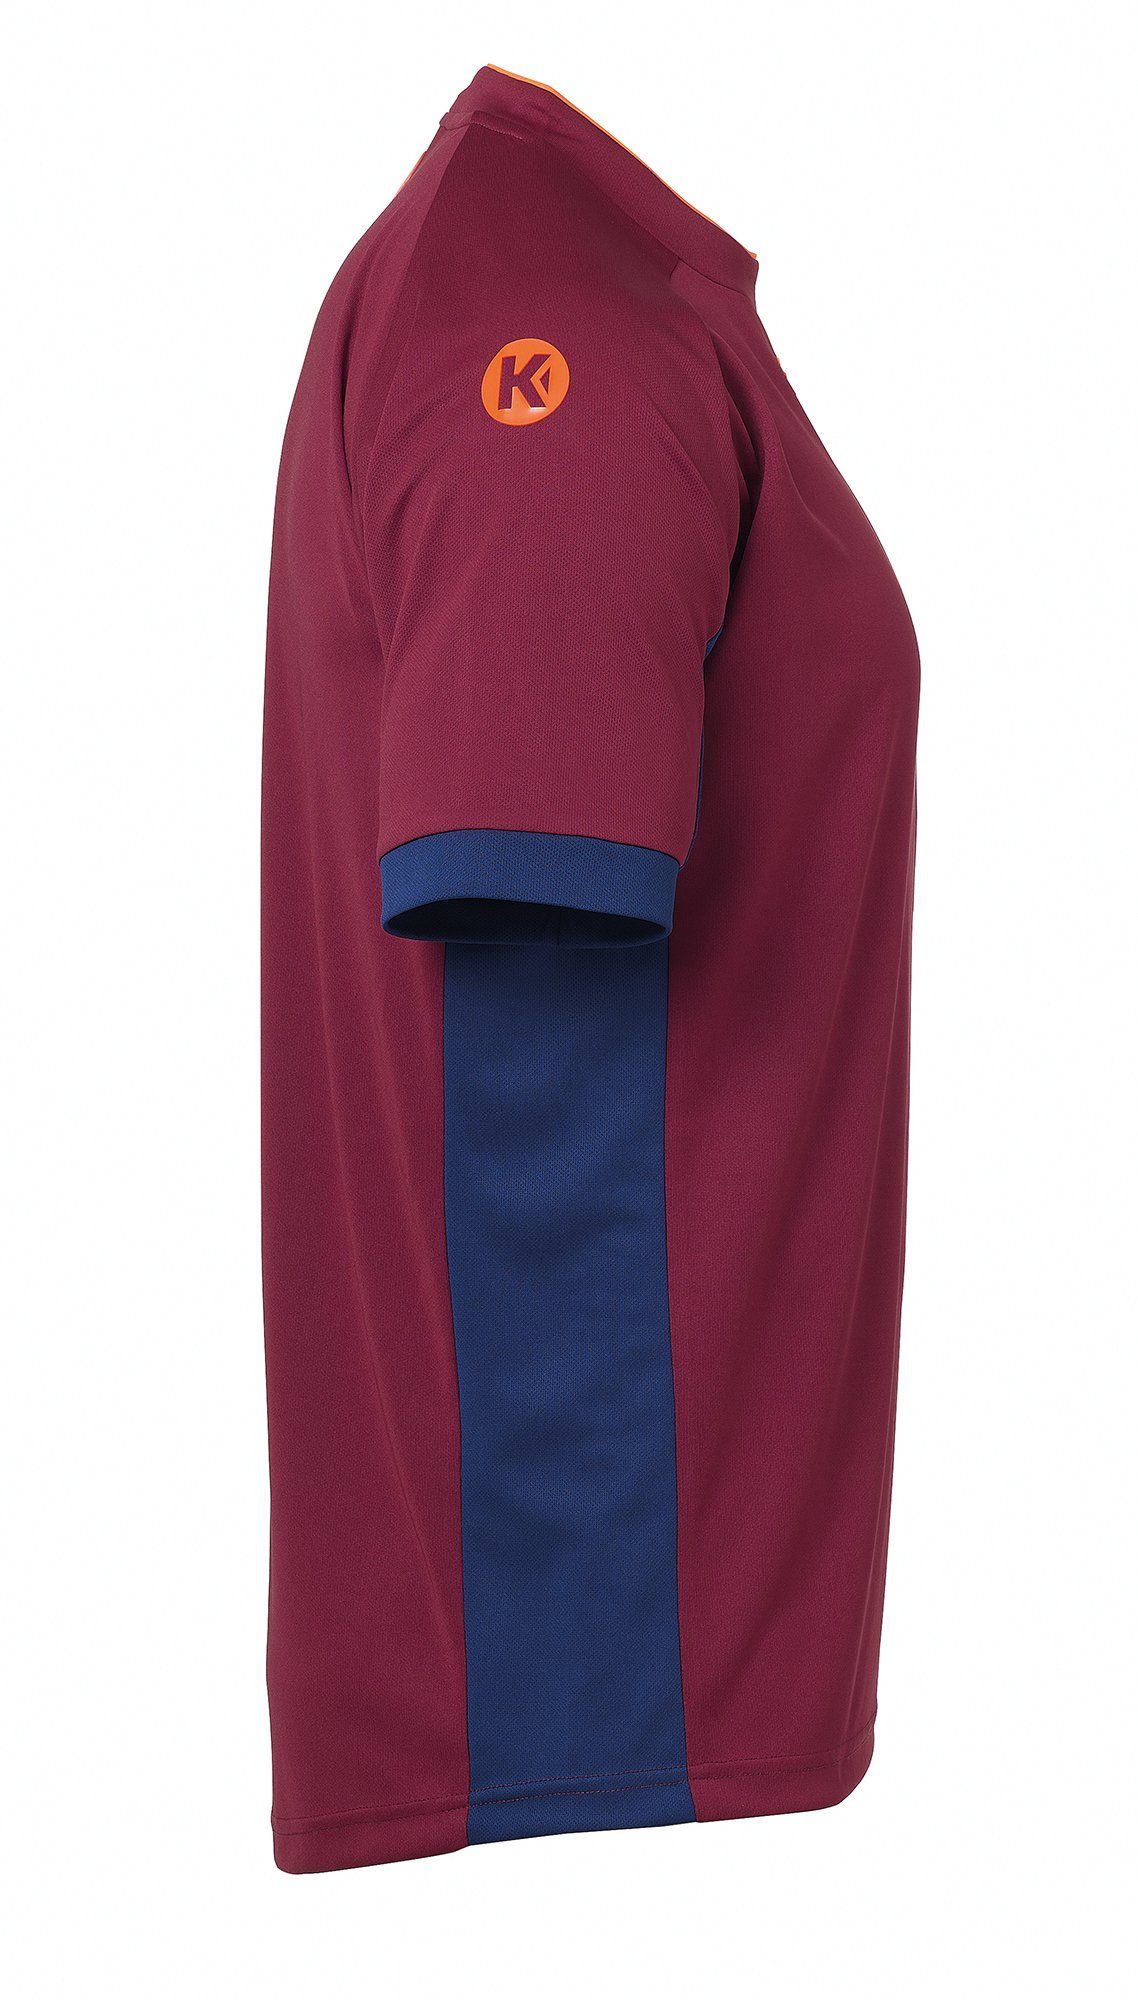 Kempa TRIKOT schnelltrocknend blau/deep Kempa deep Shirt rot PRIME Trainingsshirt